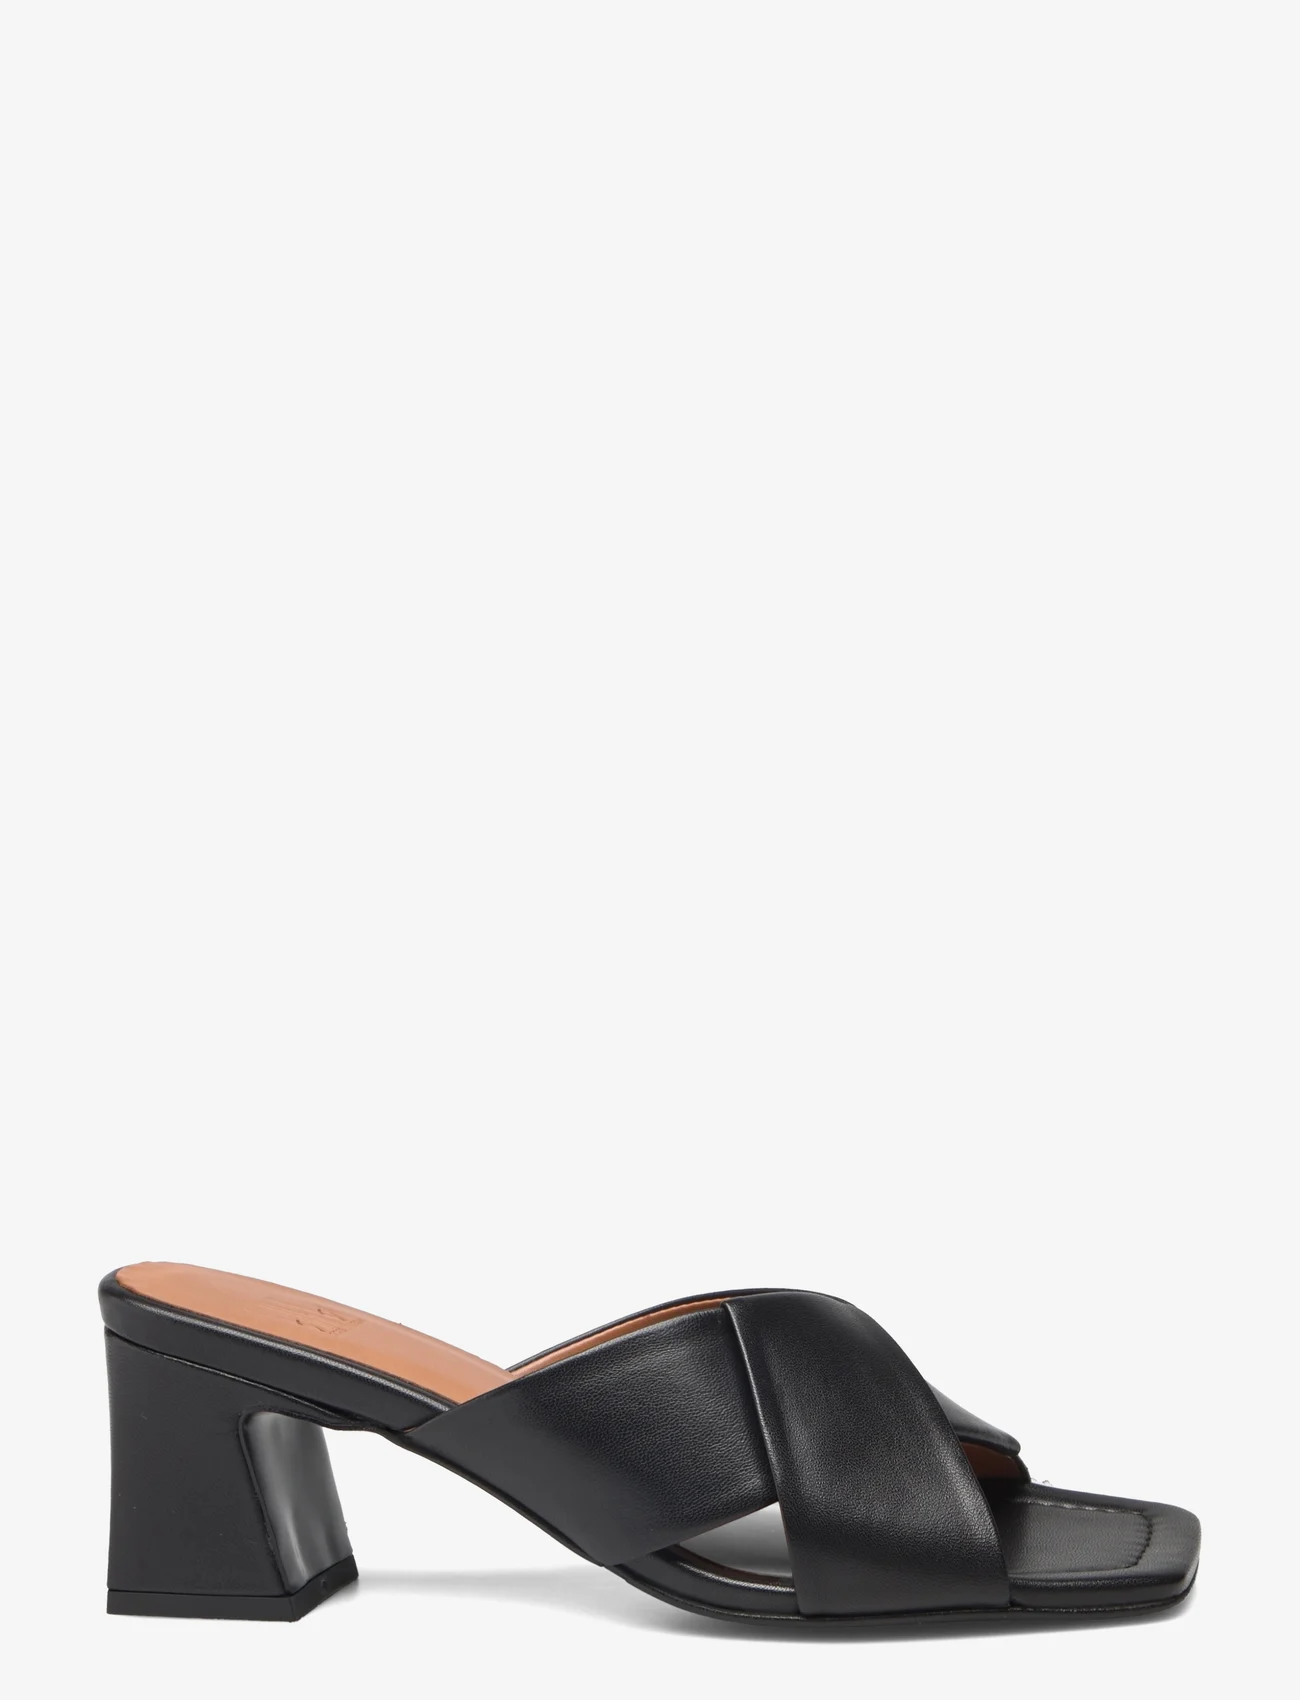 Billi Bi - Sandals - heeled sandals - black nappa - 1